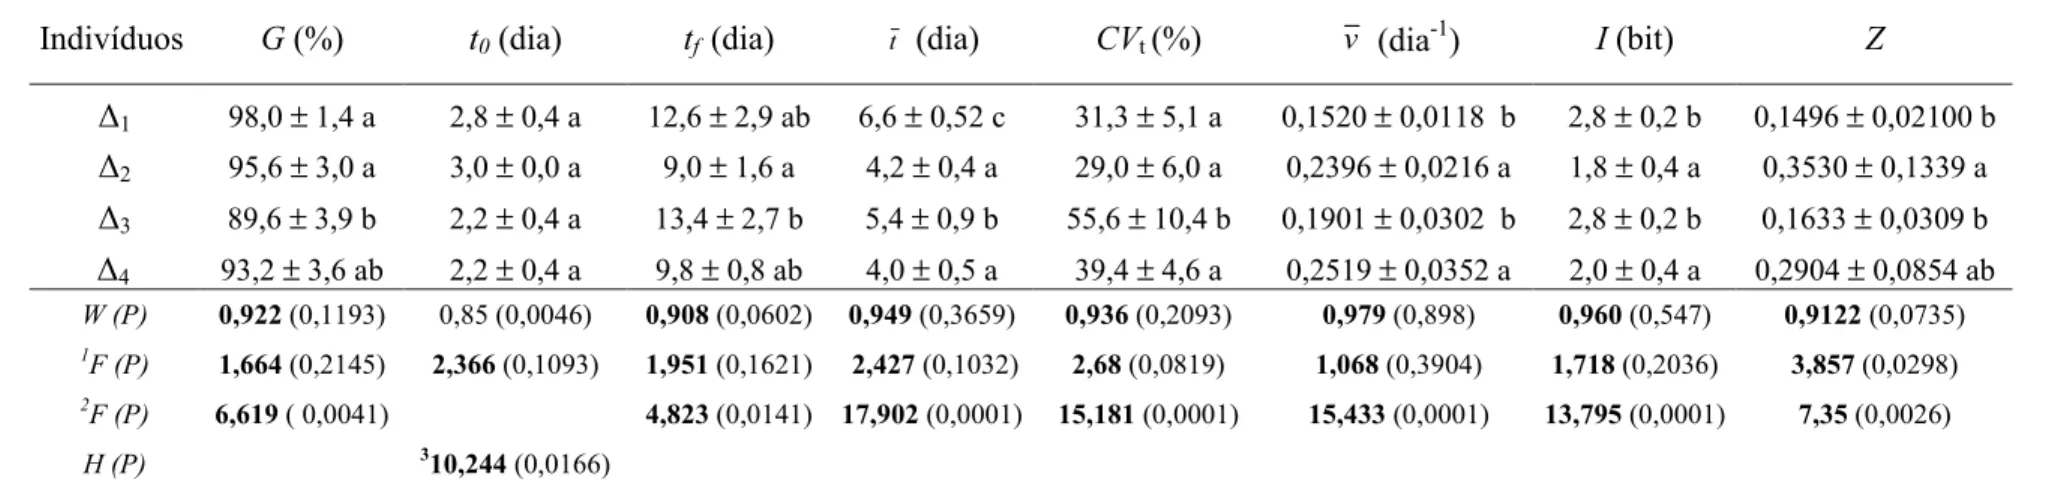 Tabela 10. Medidas de germinação (média ± desvio padrão) de sementes Ceiba speciosa A